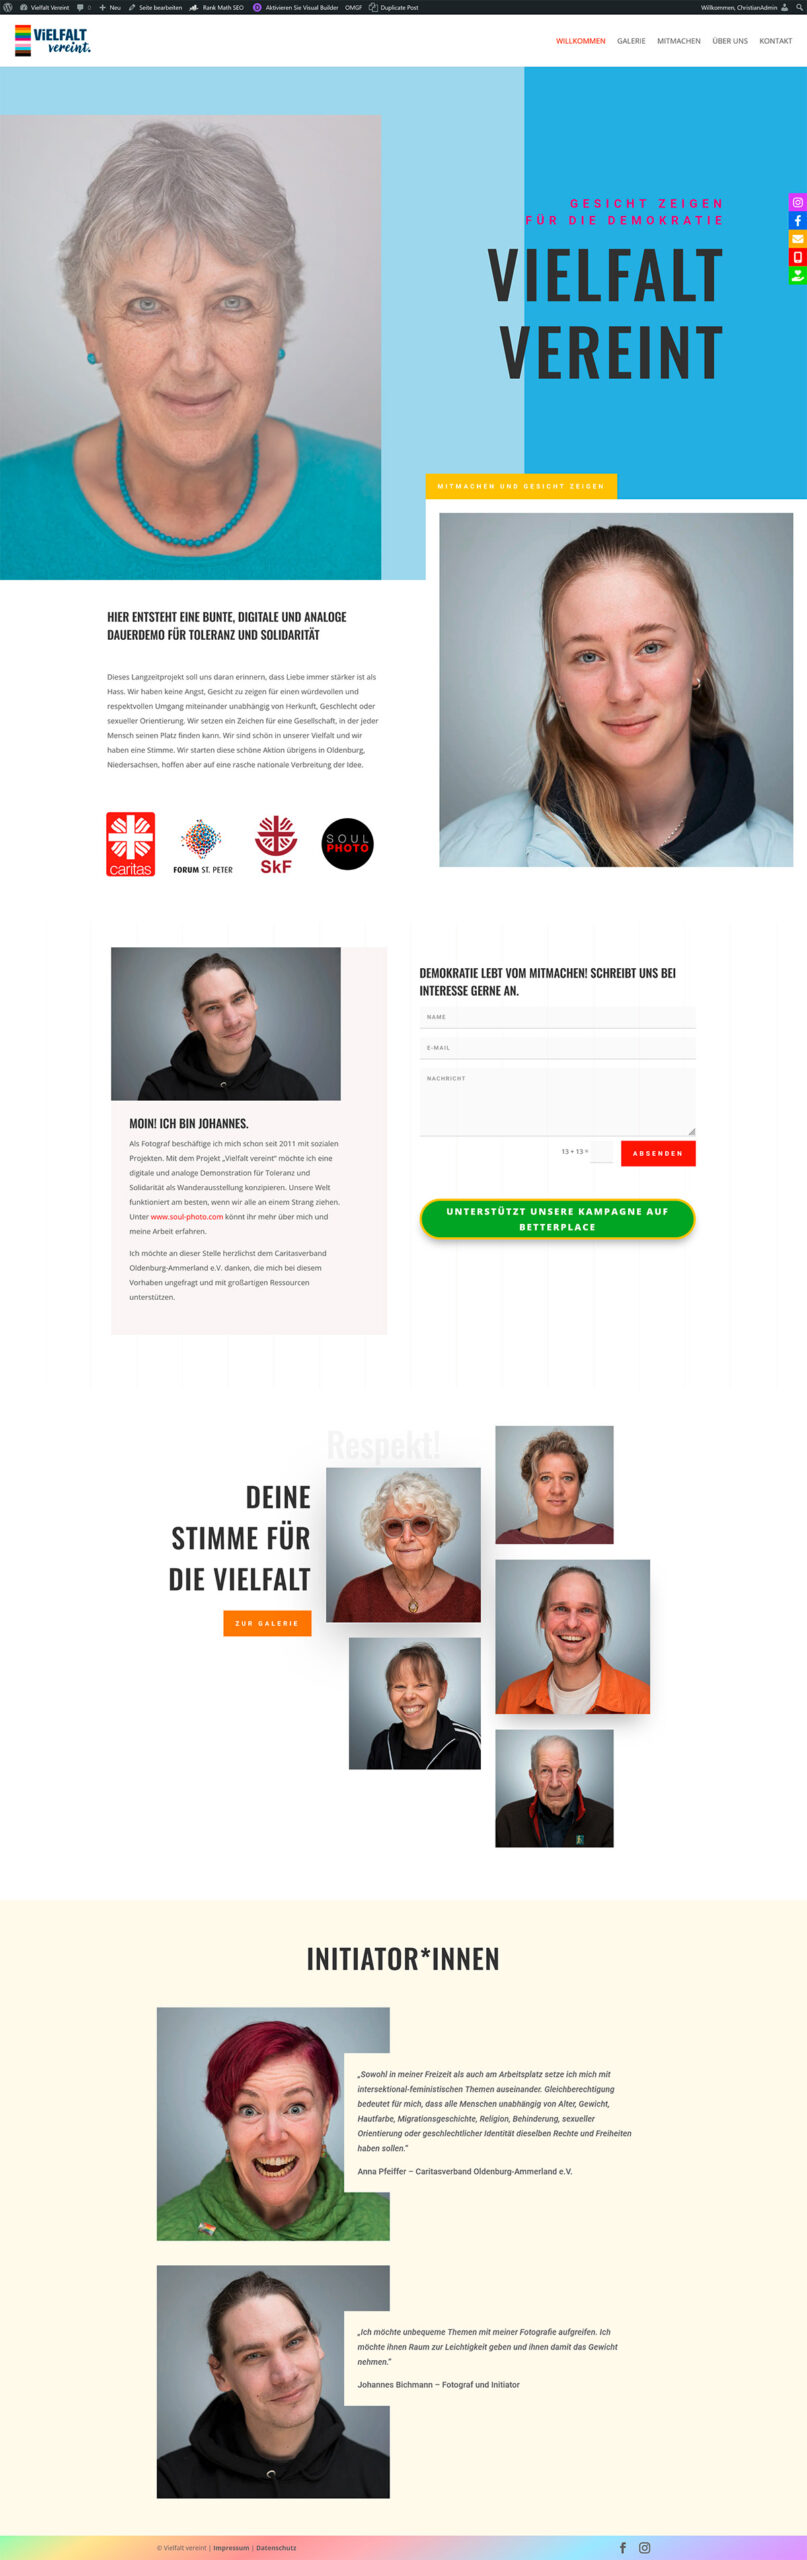 Webdesign-Vielfalt-Vereint-fuer-Toleranz-und-Solidaritaet